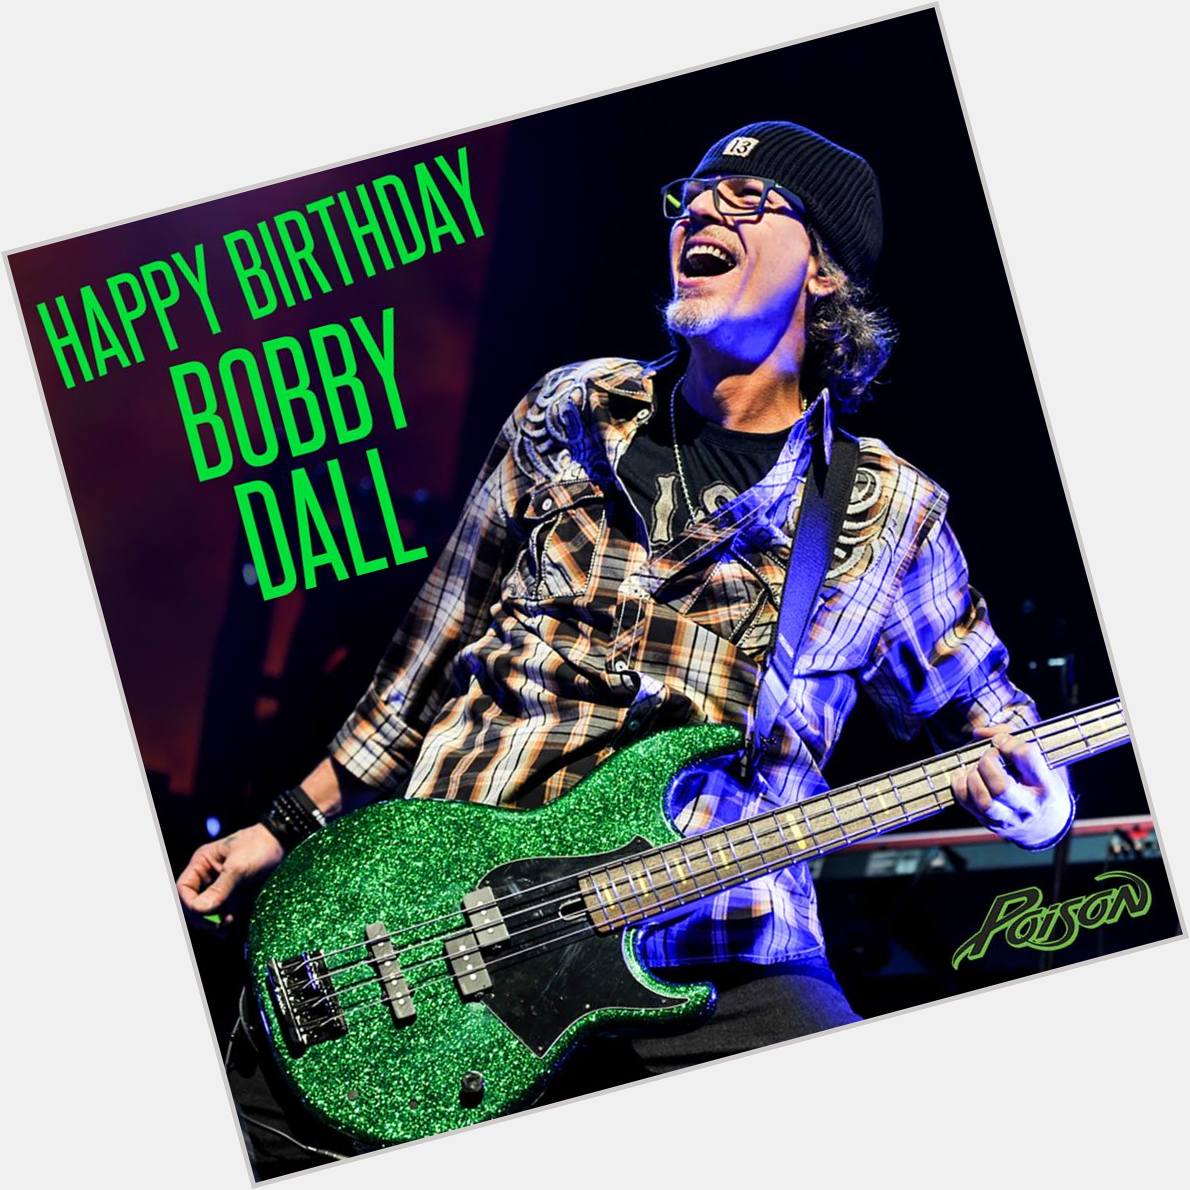 Happy Birthday Bobby Dall.        